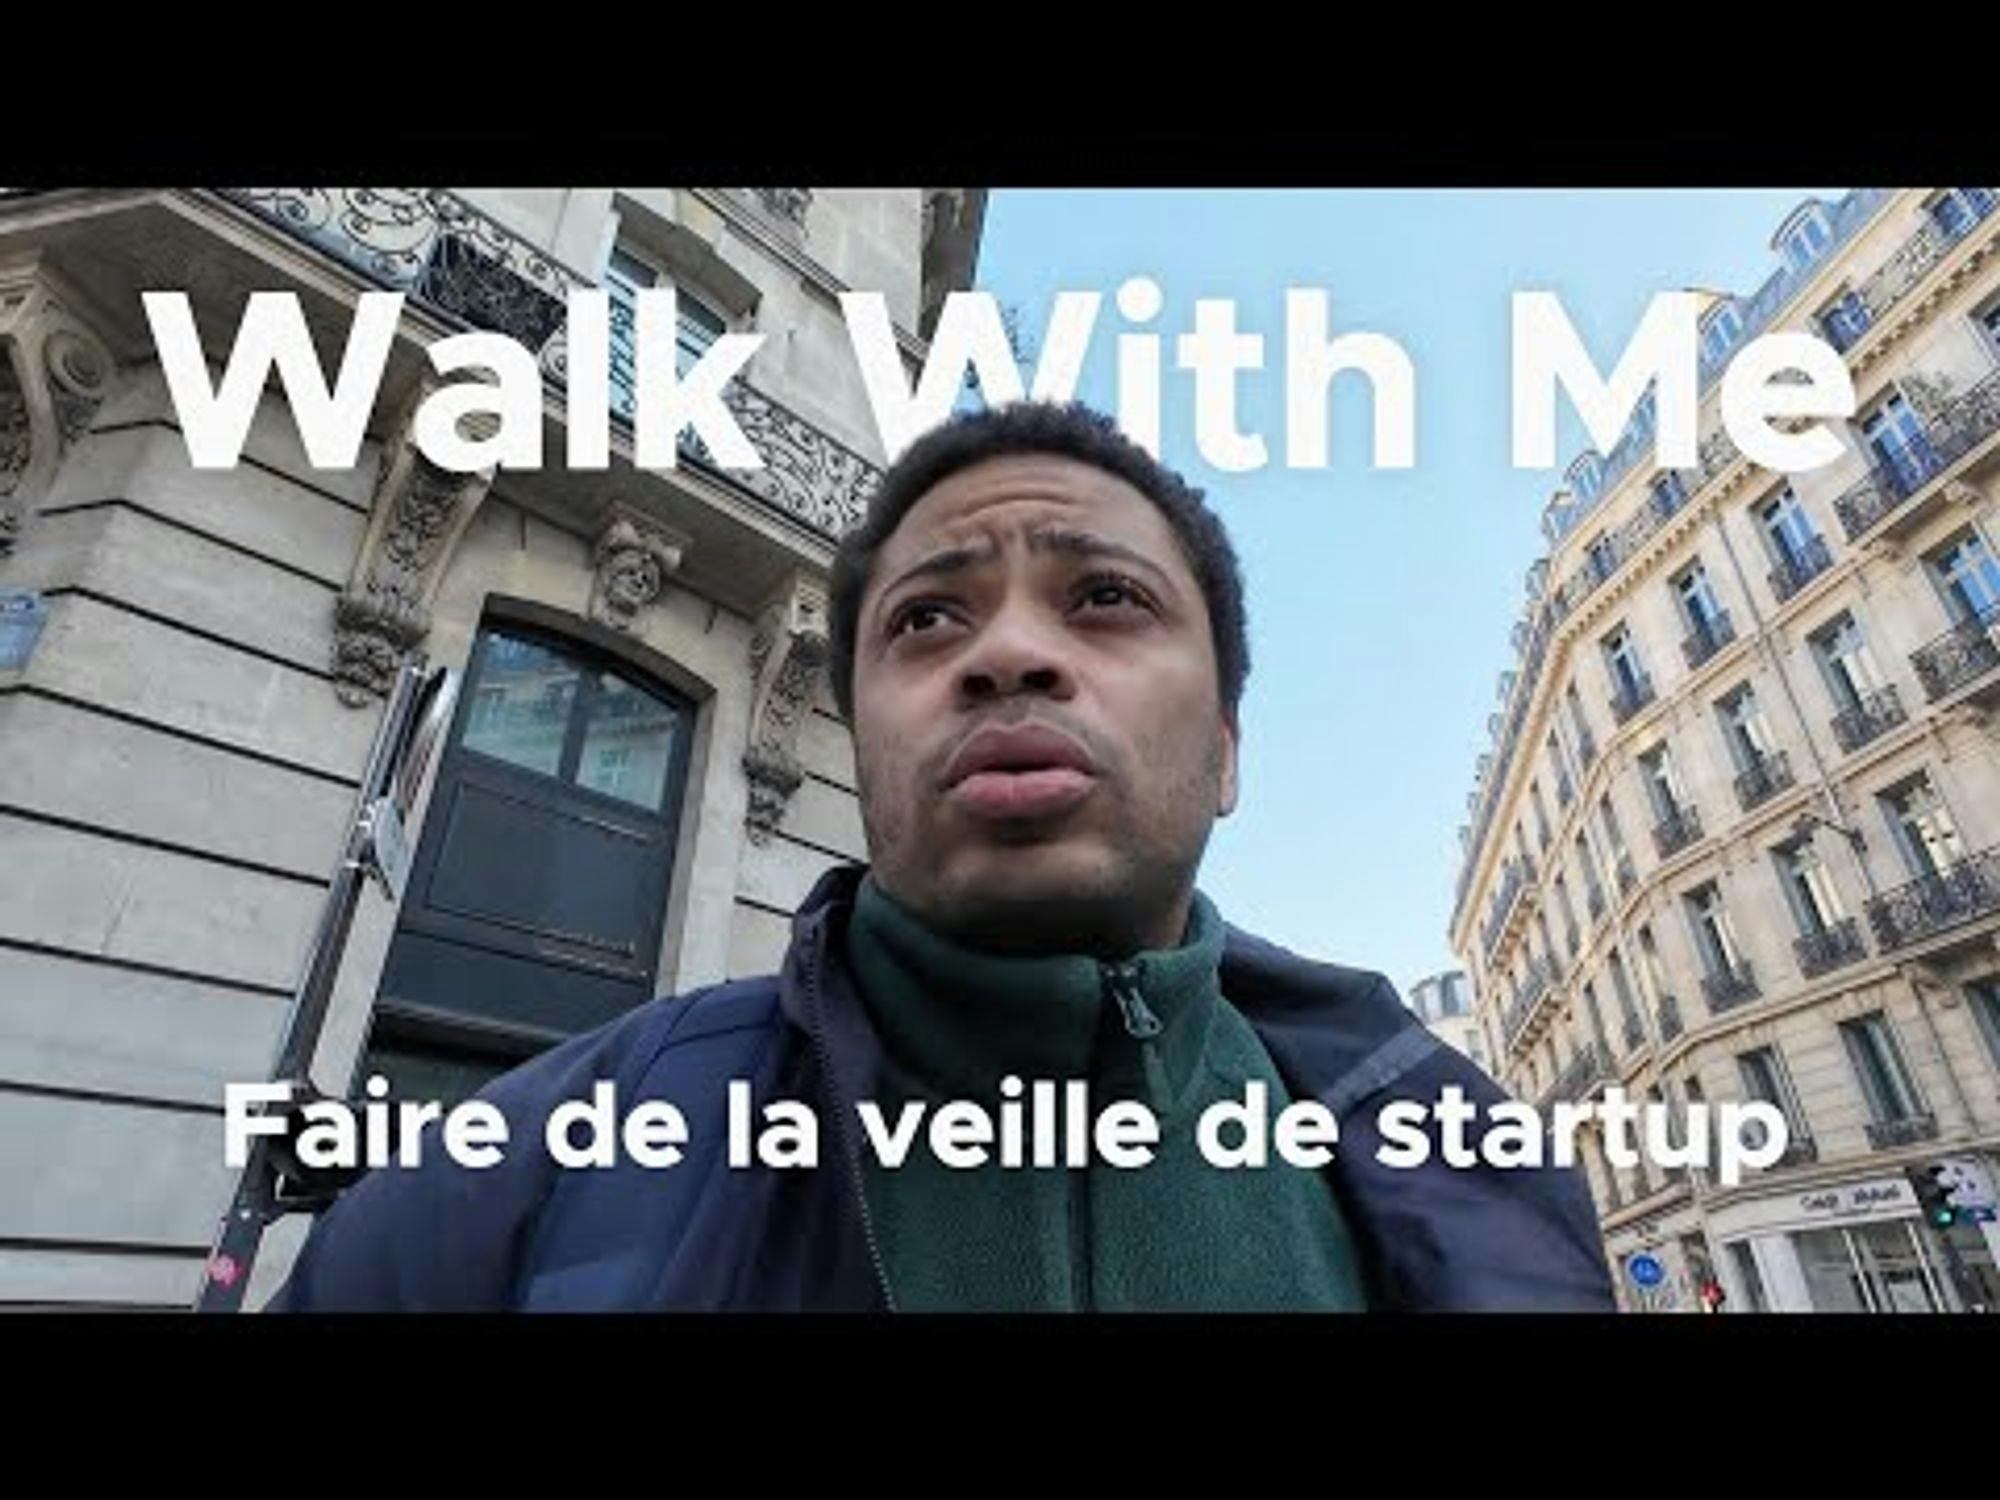 Comment faire de la veille de startup ? #WalkWithMe #ep1